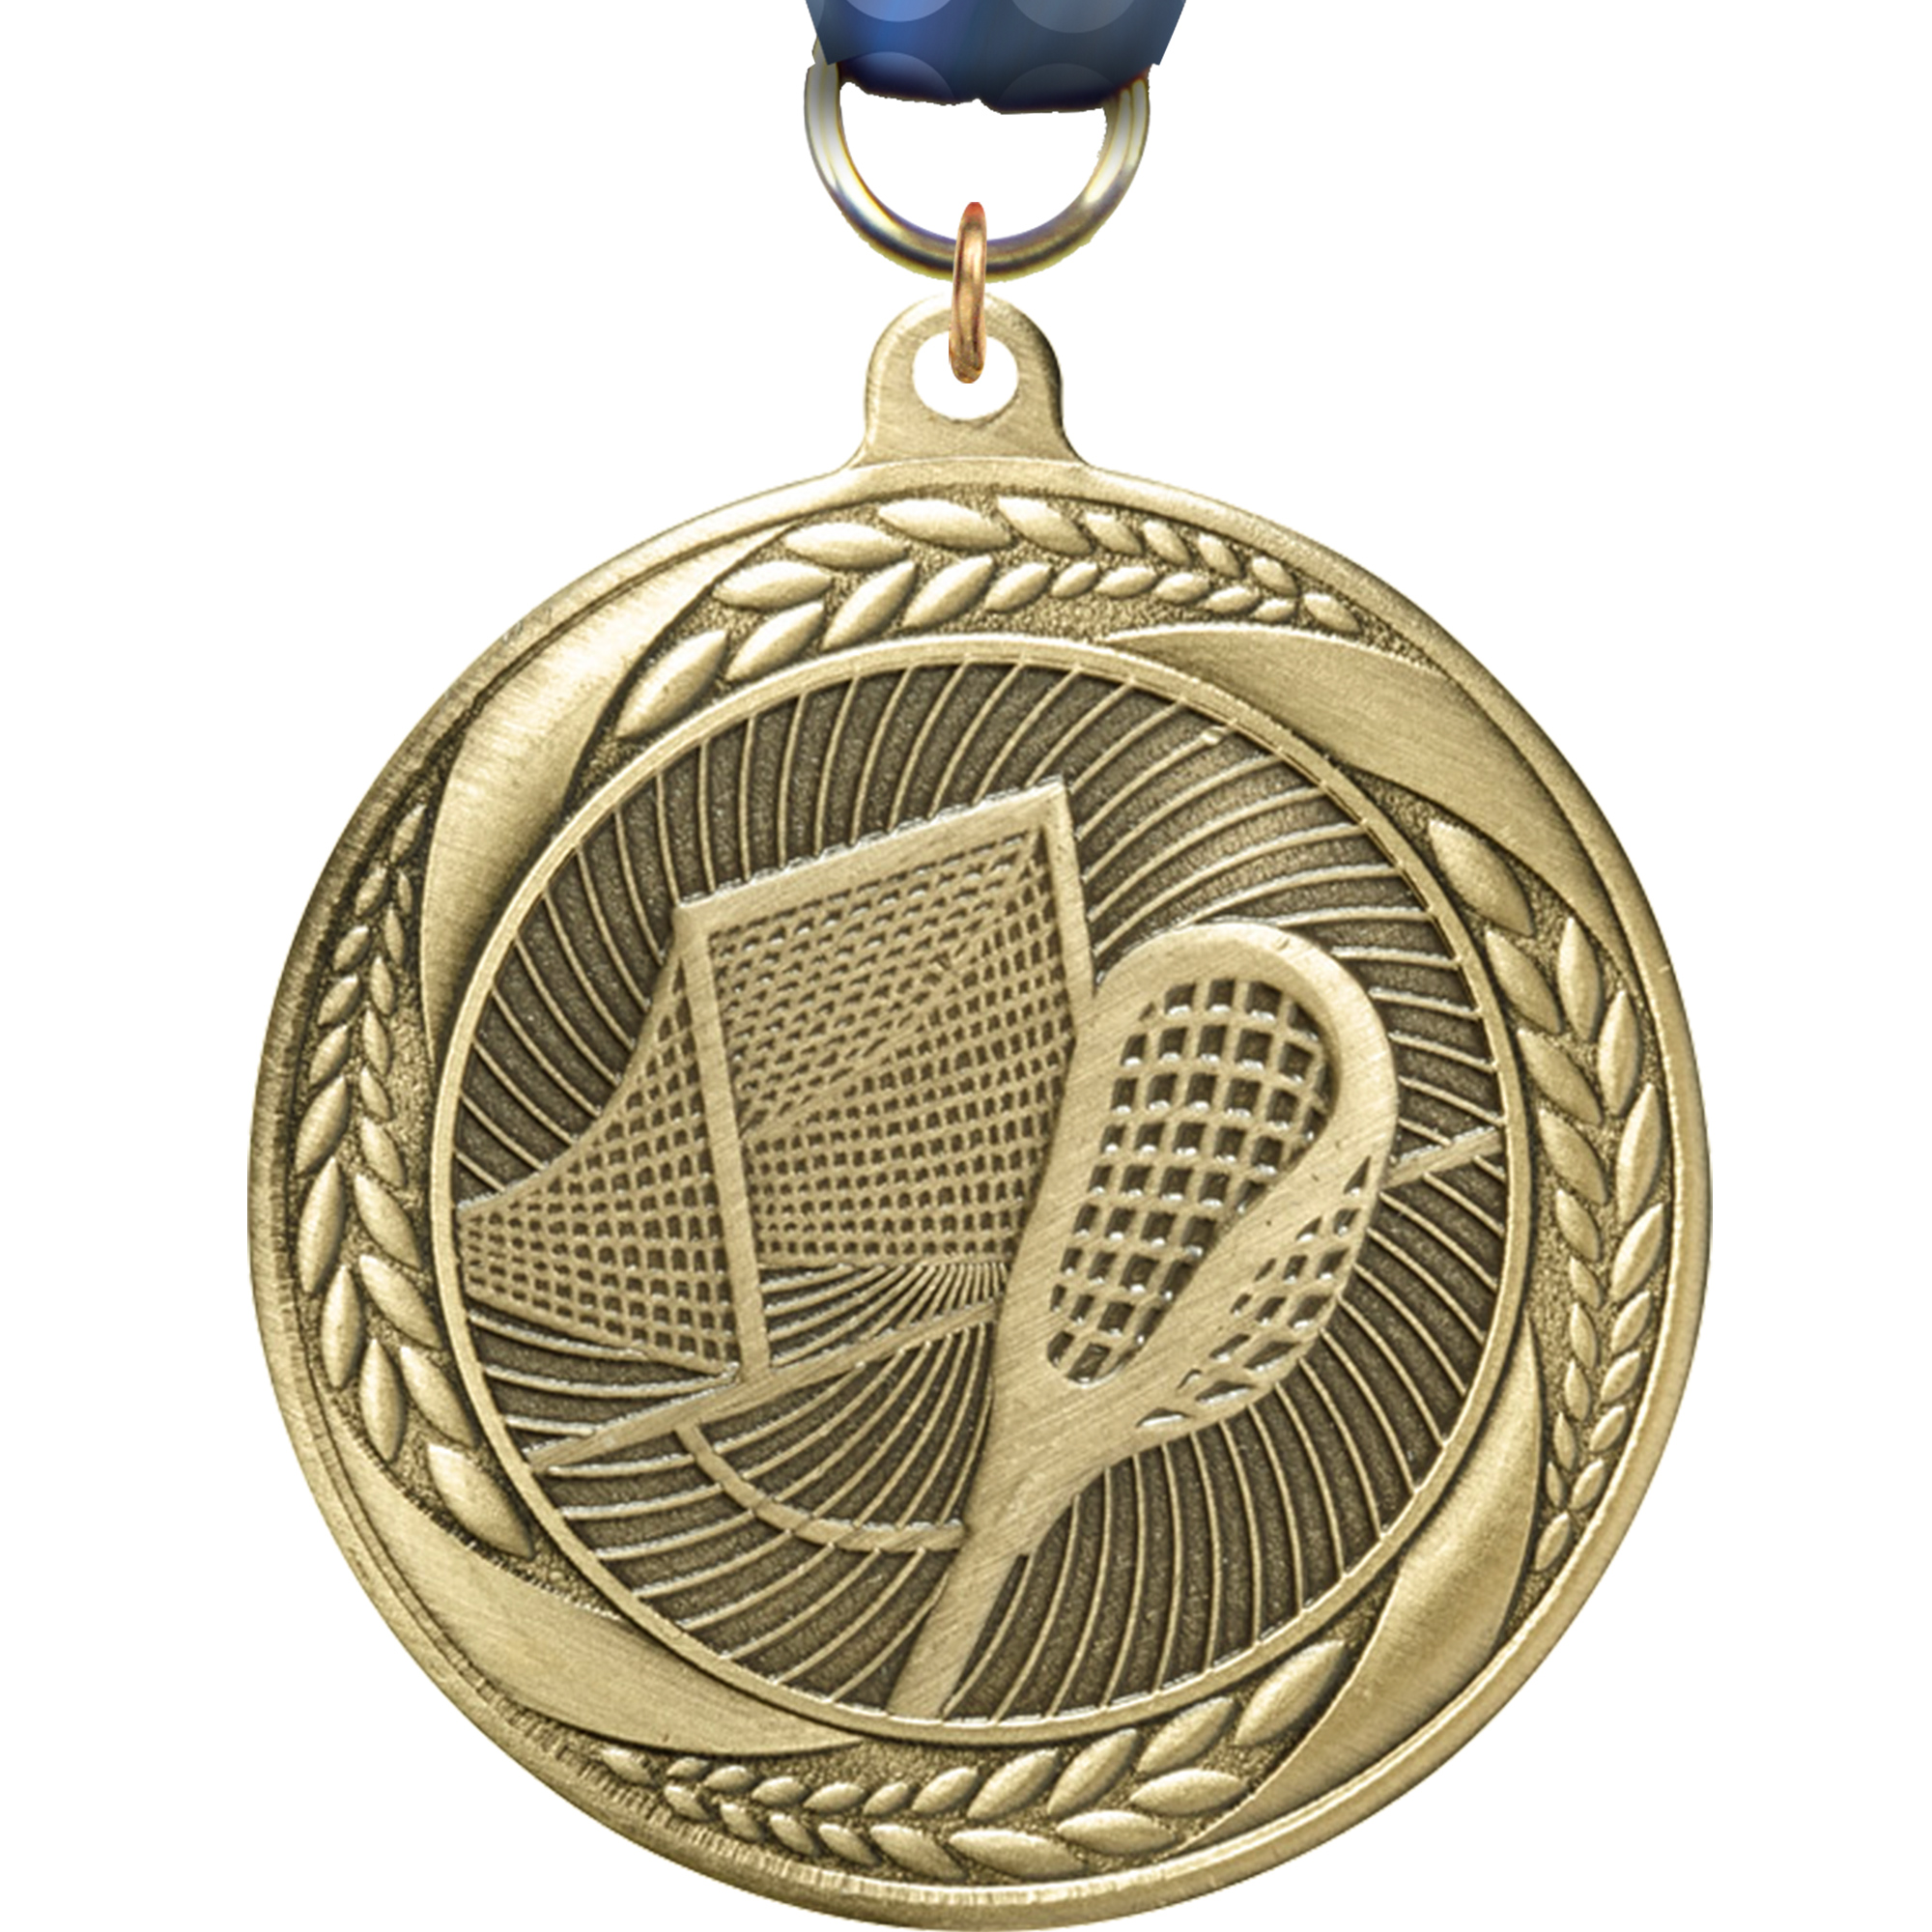 Lacrosse Laurel Wreath Medal